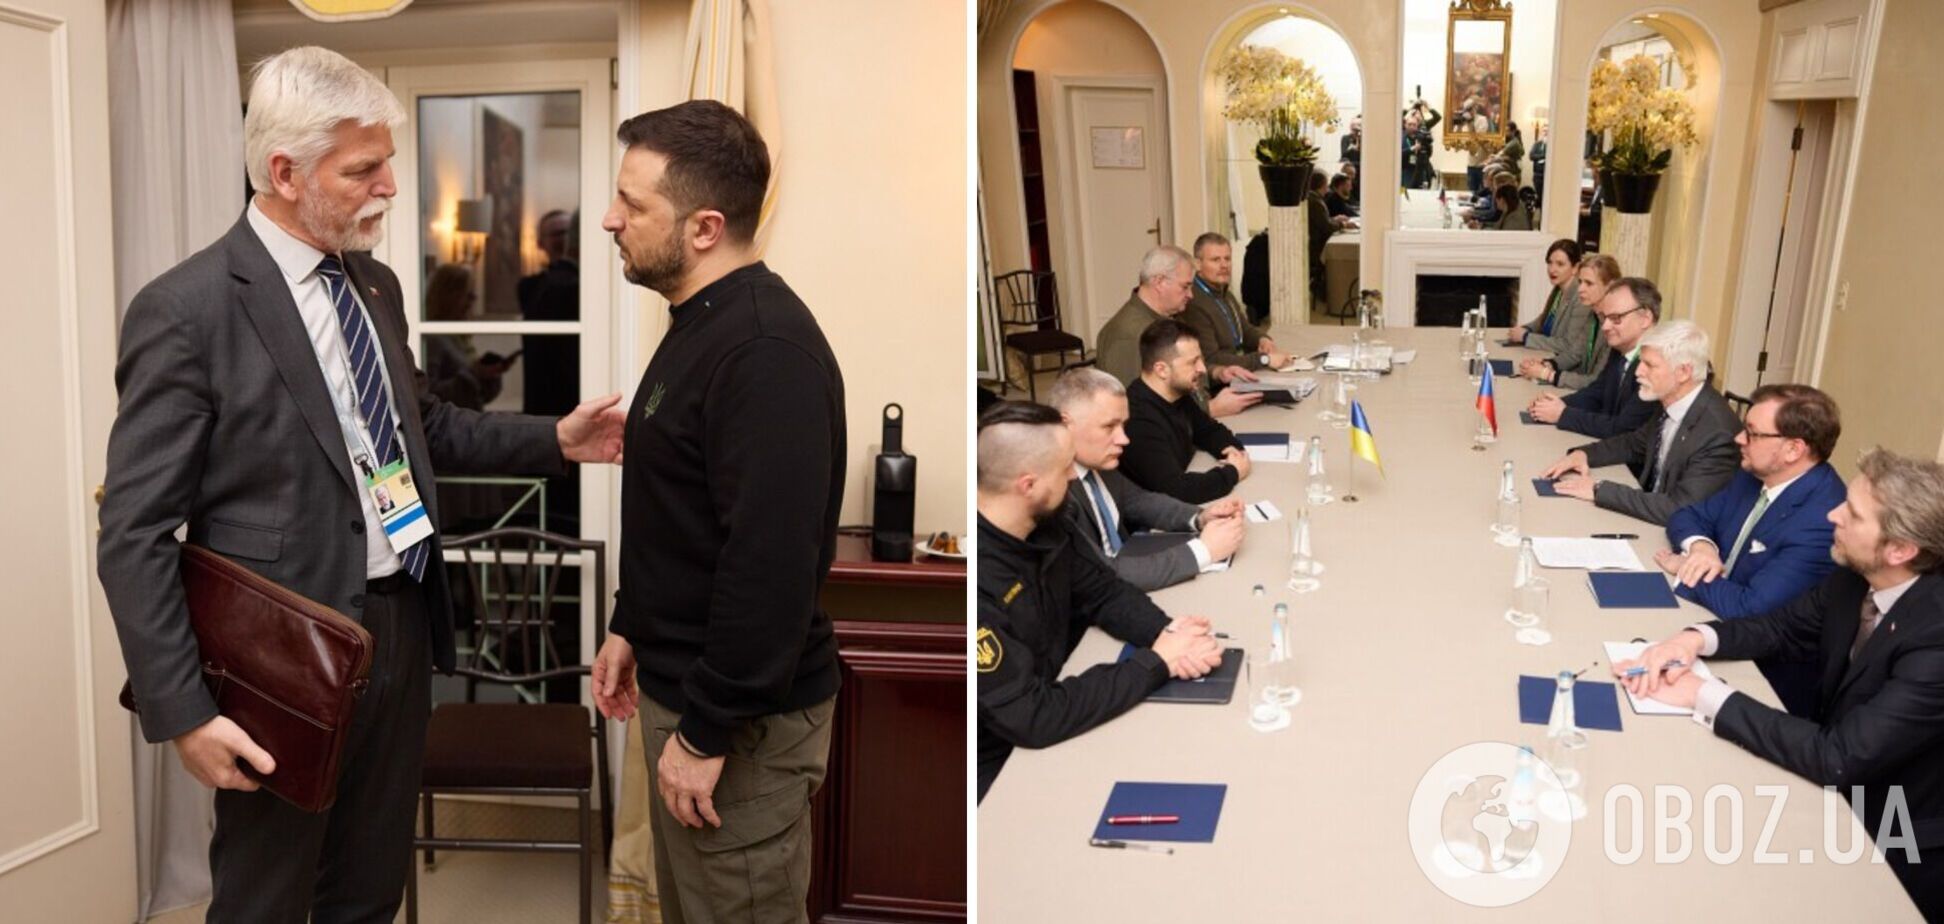 Обсудили совместное производство вооружений: Зеленский в Мюнхене встретился с президентом Чехии. Фото и видео